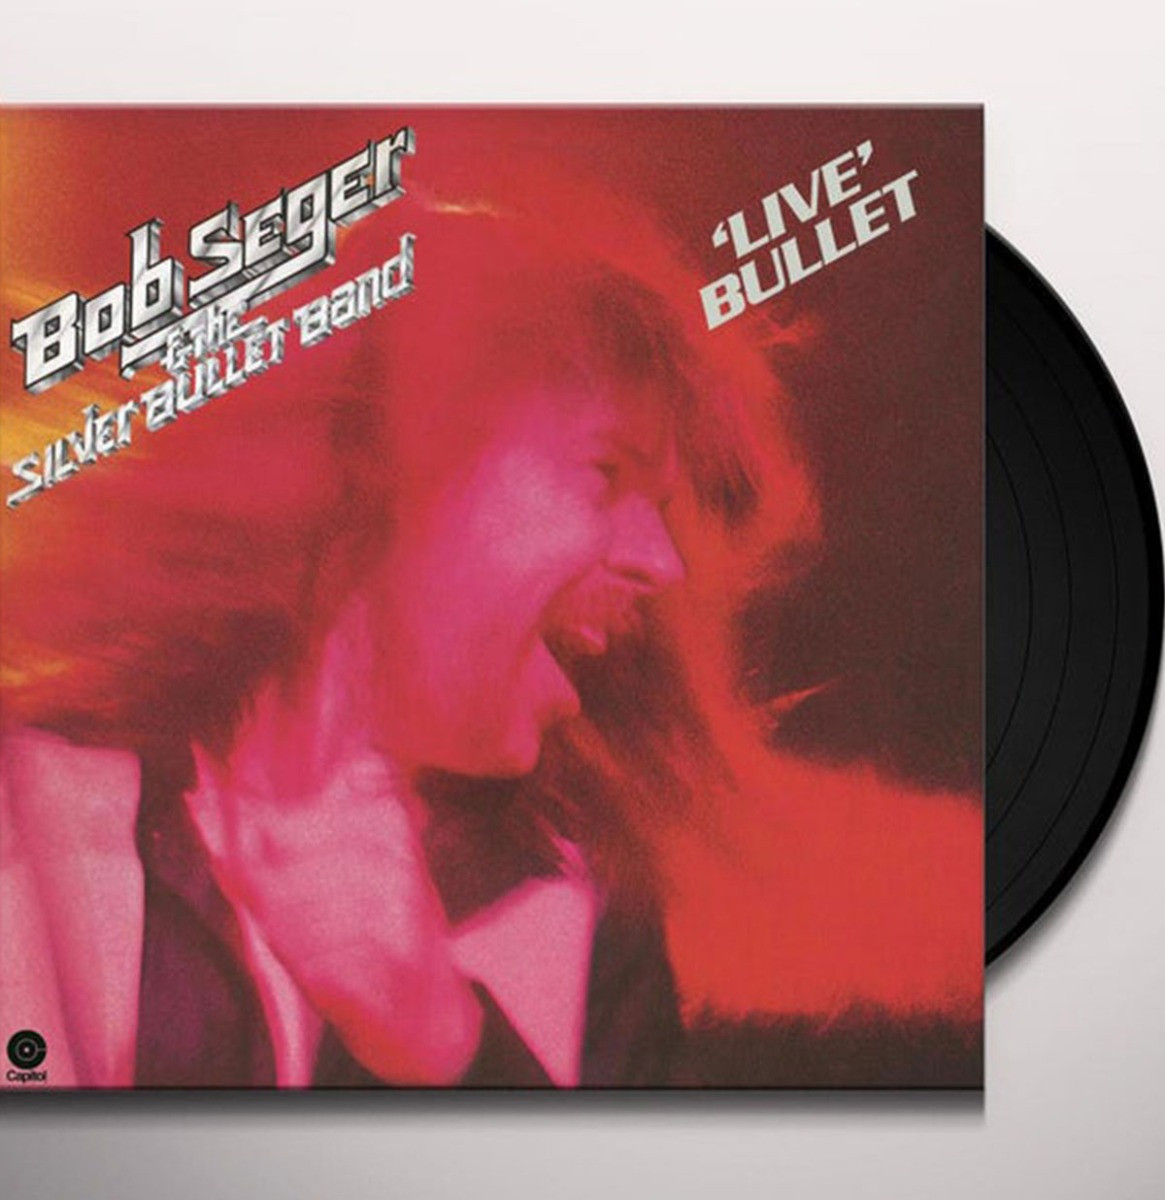 Bob Seger & The Silver Bullet Band - Live Bullet 2LP